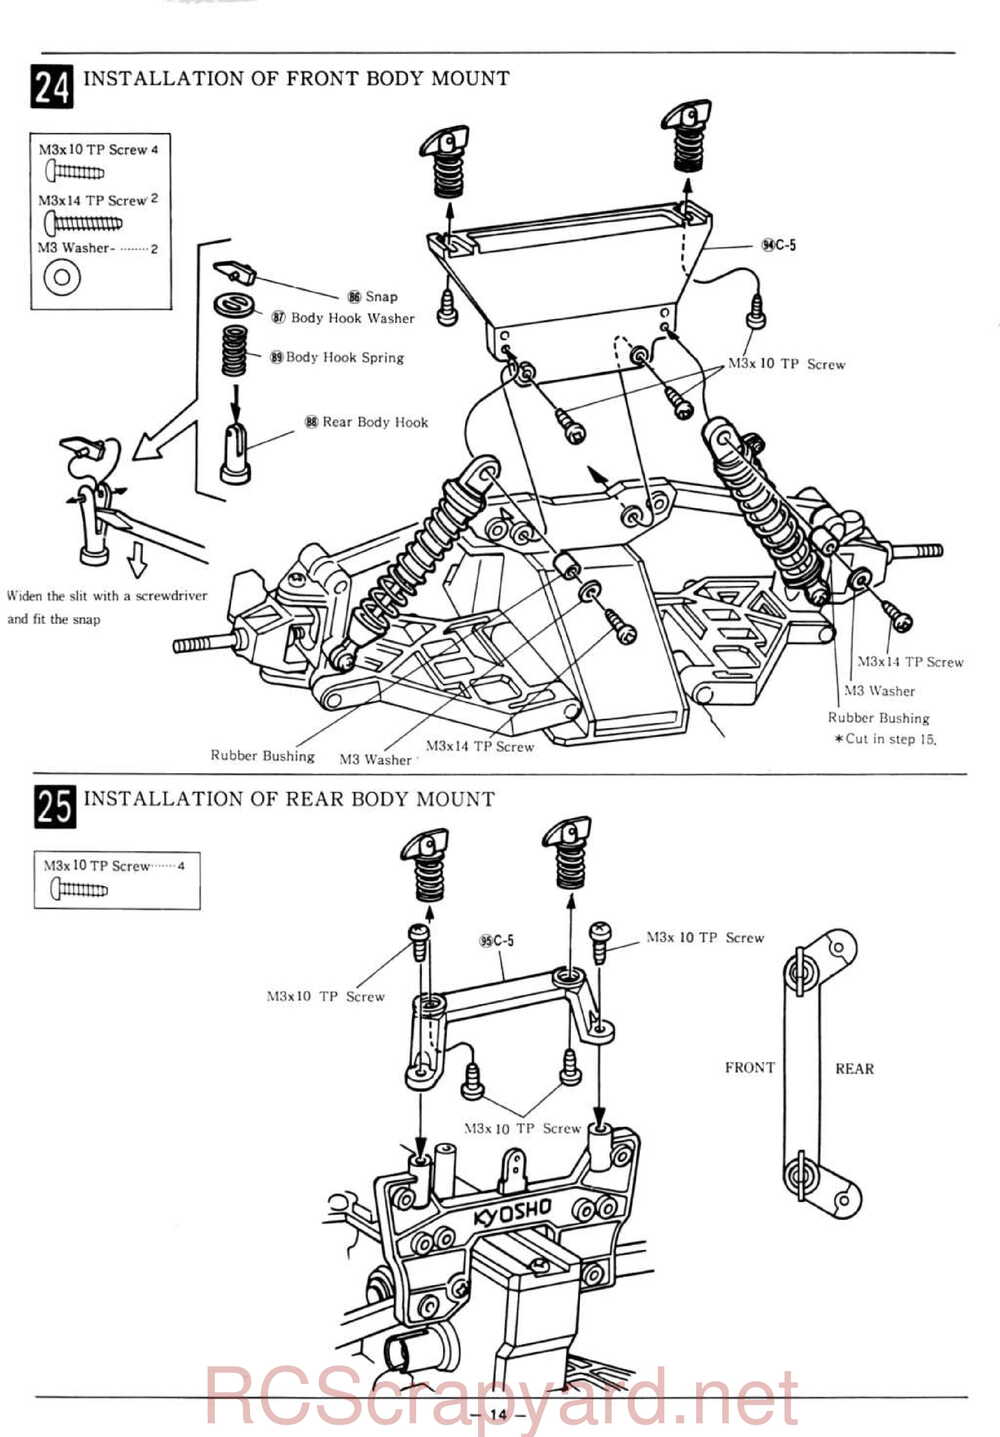 Kyosho - 3163 - Citroen-ZX Rallye Raid - Manual - Page 14